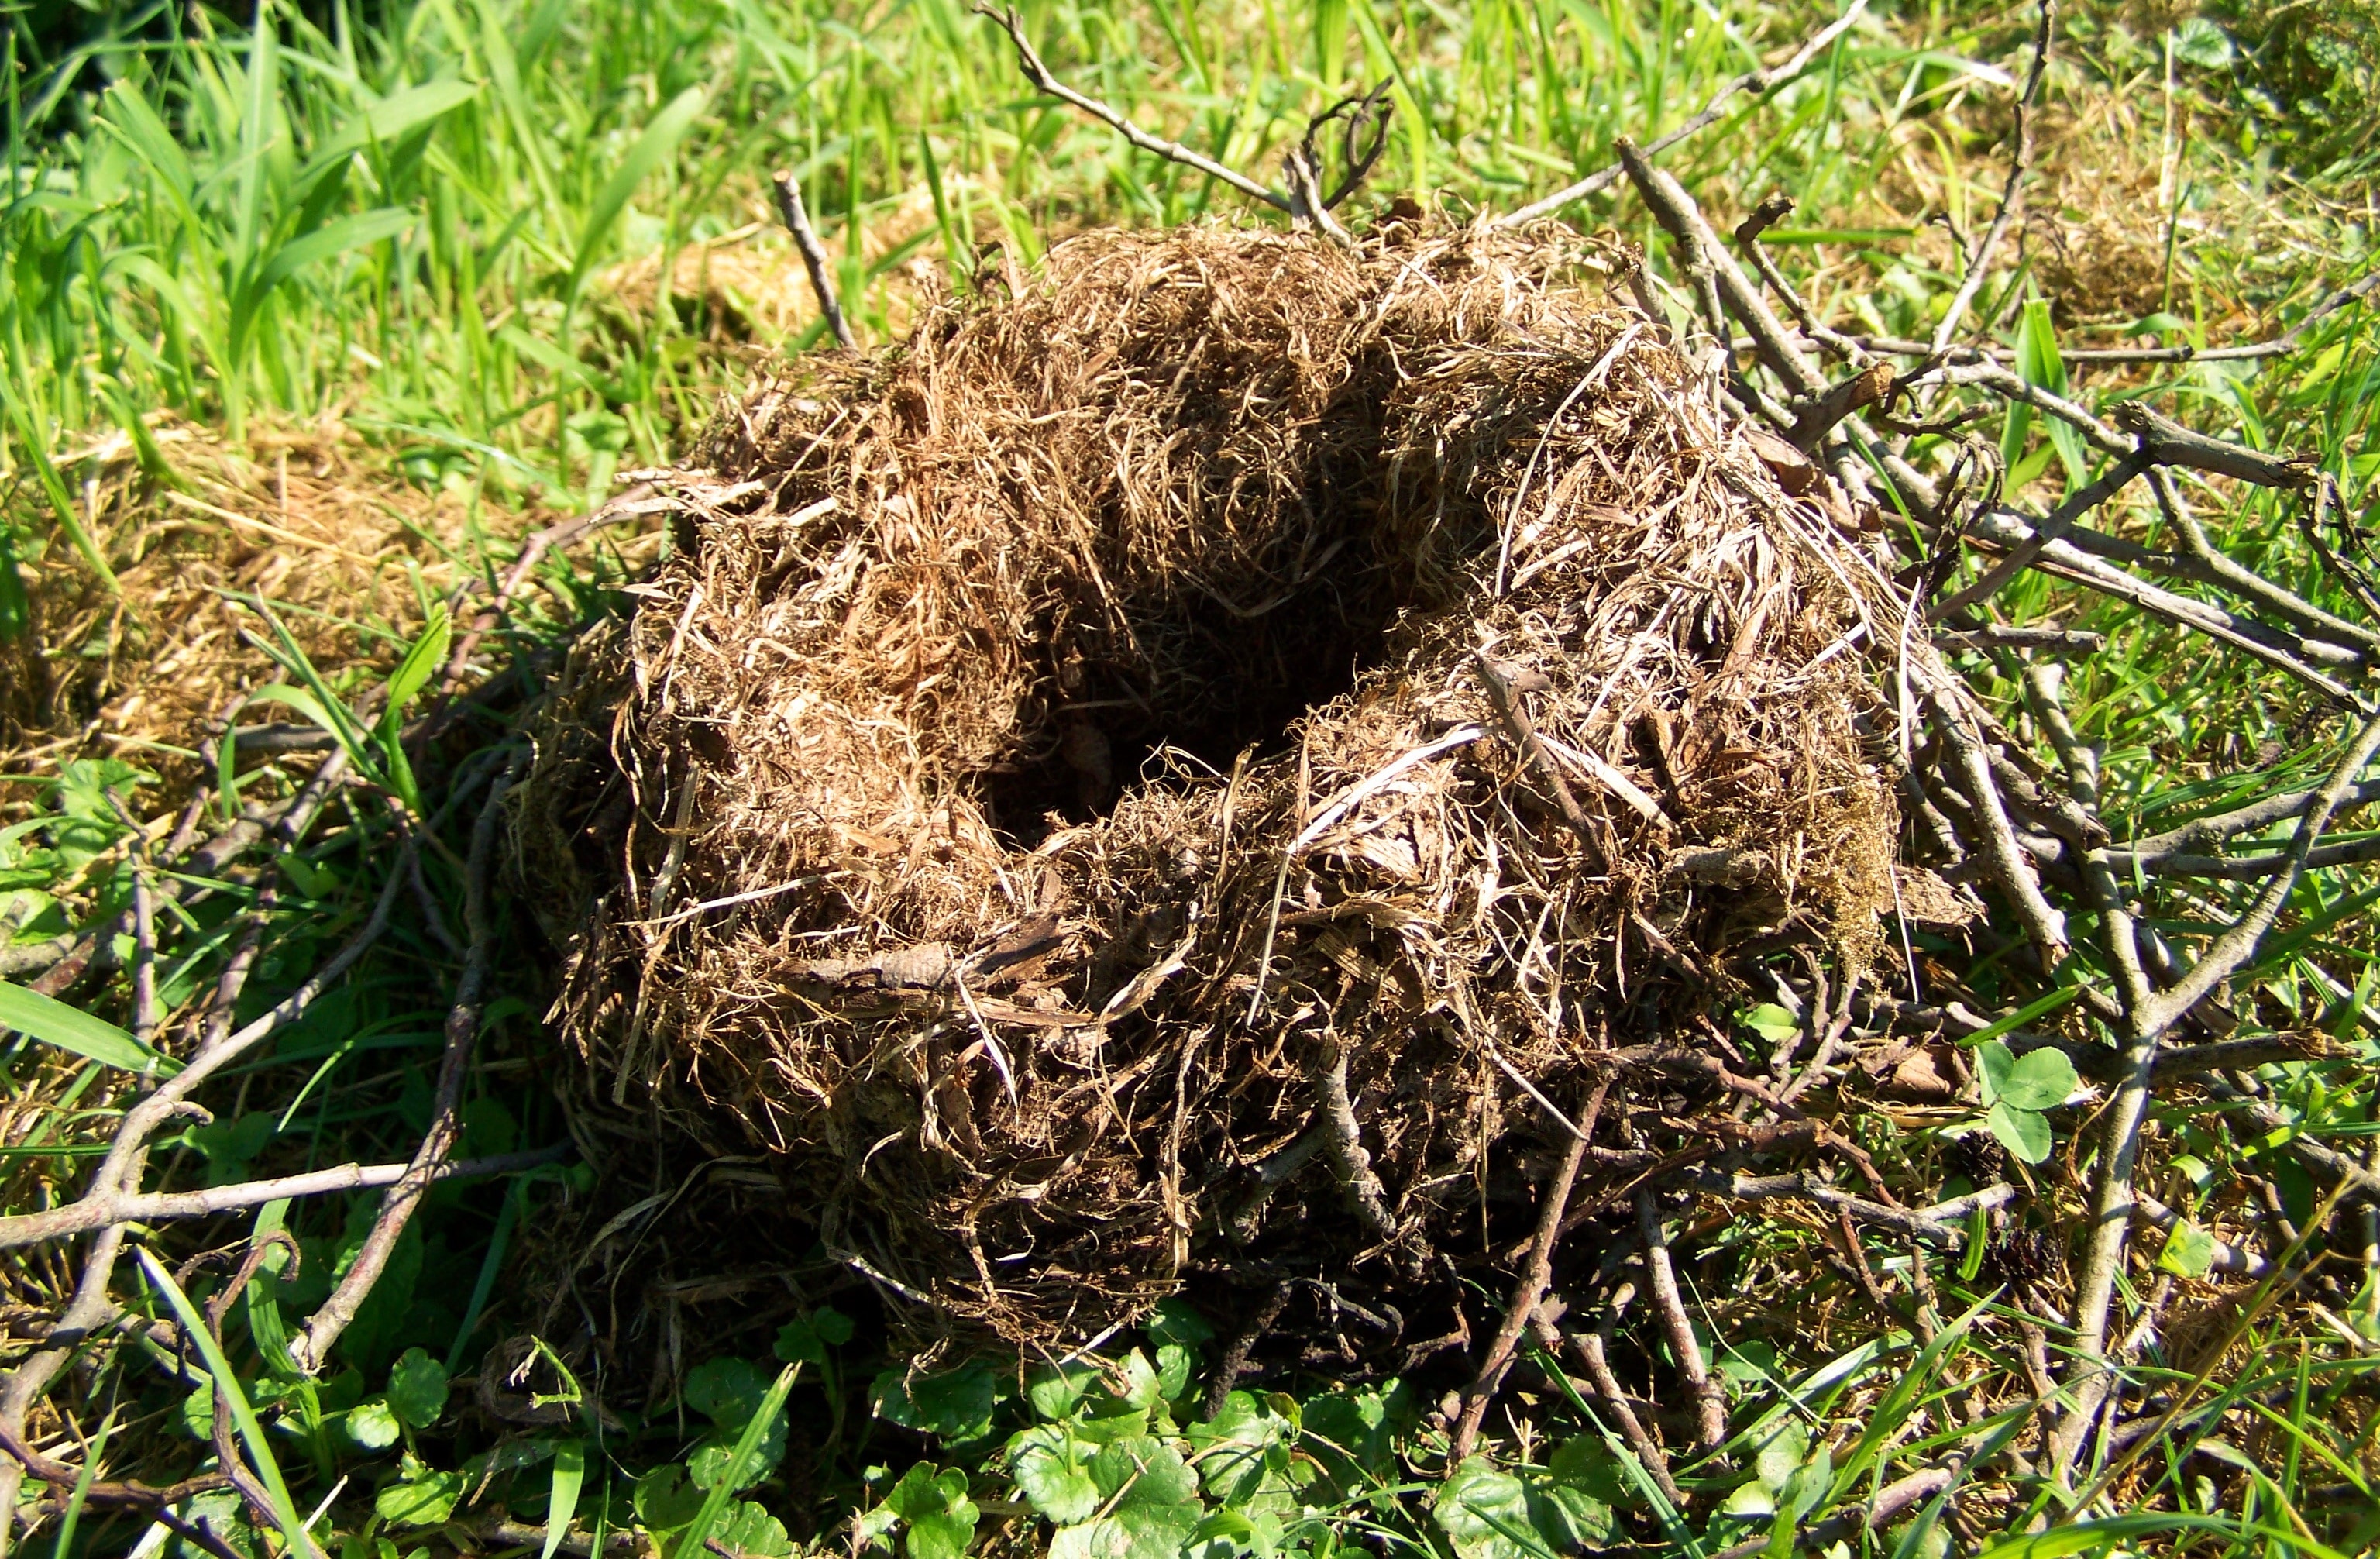 Their nests. Гнездо Гайно это. Гнездо белки Гайно. Птичье гнездо. Наземные гнезда.